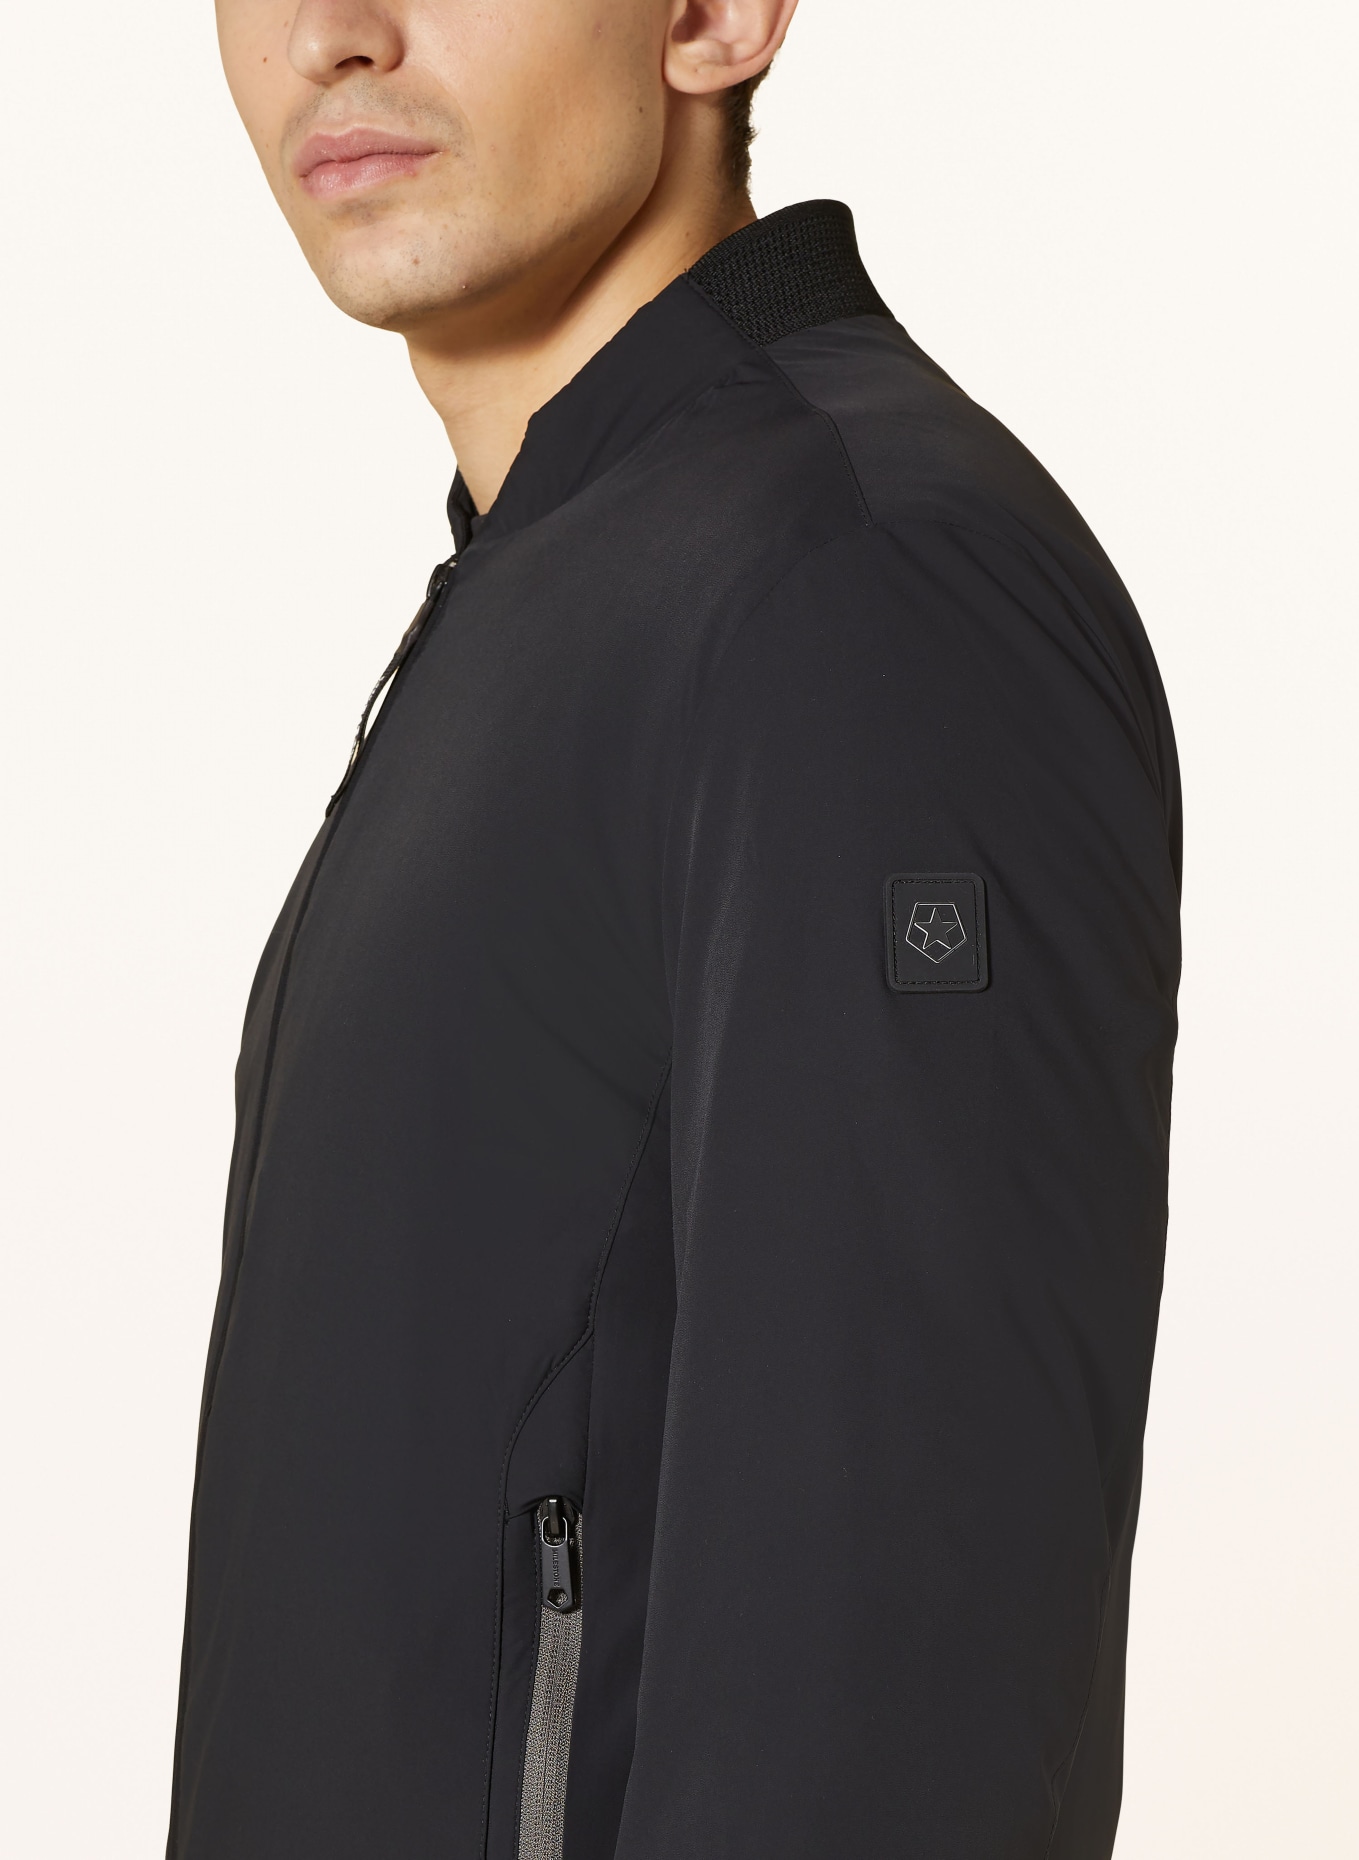 MILESTONE Bomber jacket MSPURO with SORONA® AURA insulation, Color: BLACK (Image 4)